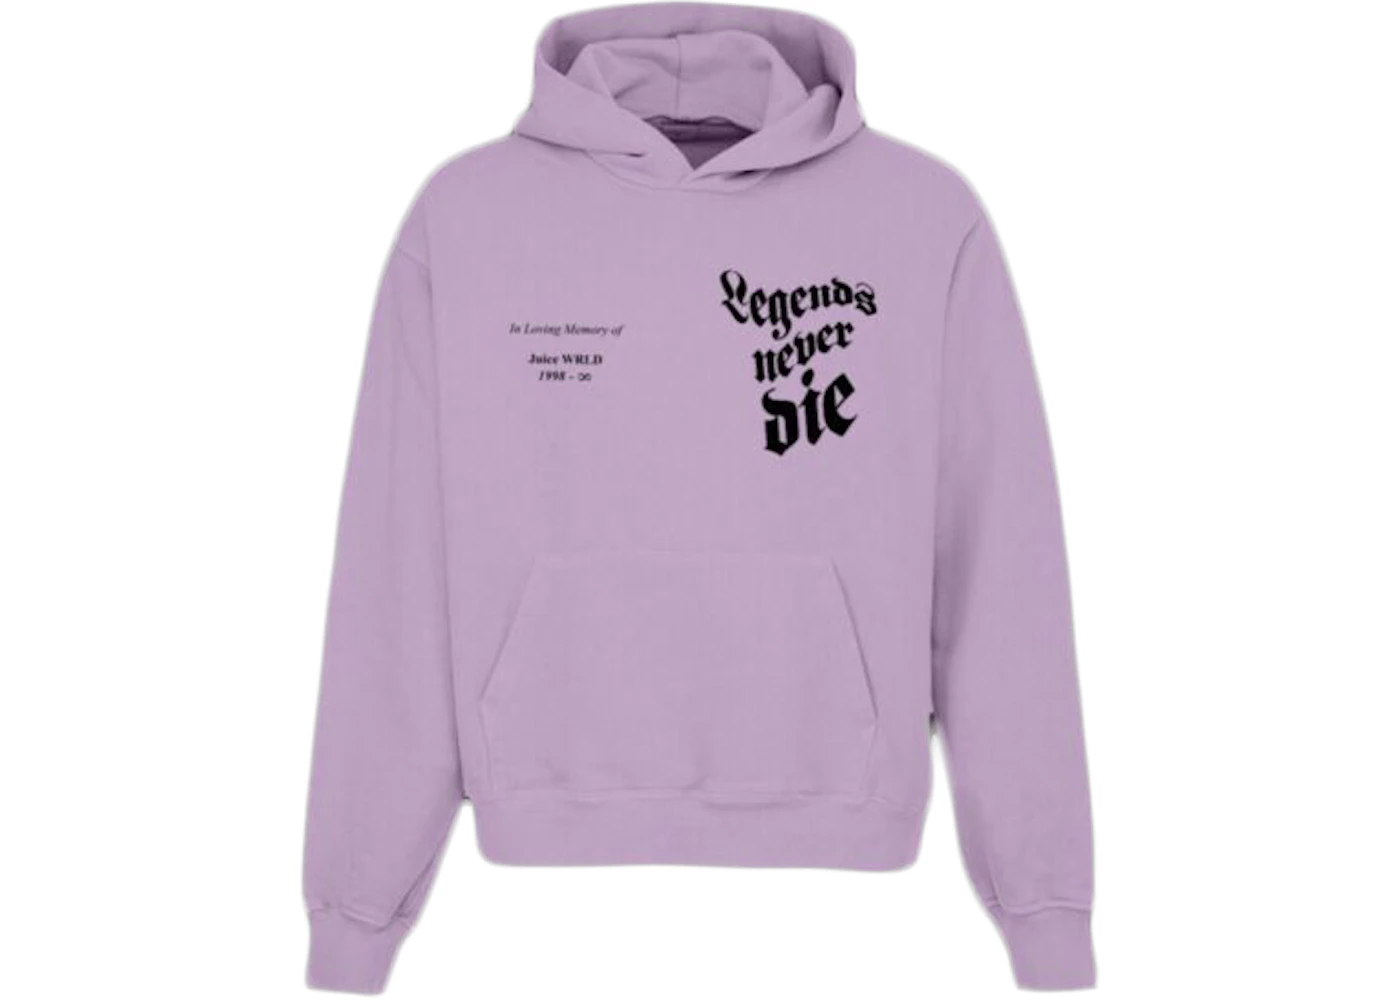 juice wrld vlone hoodie purple